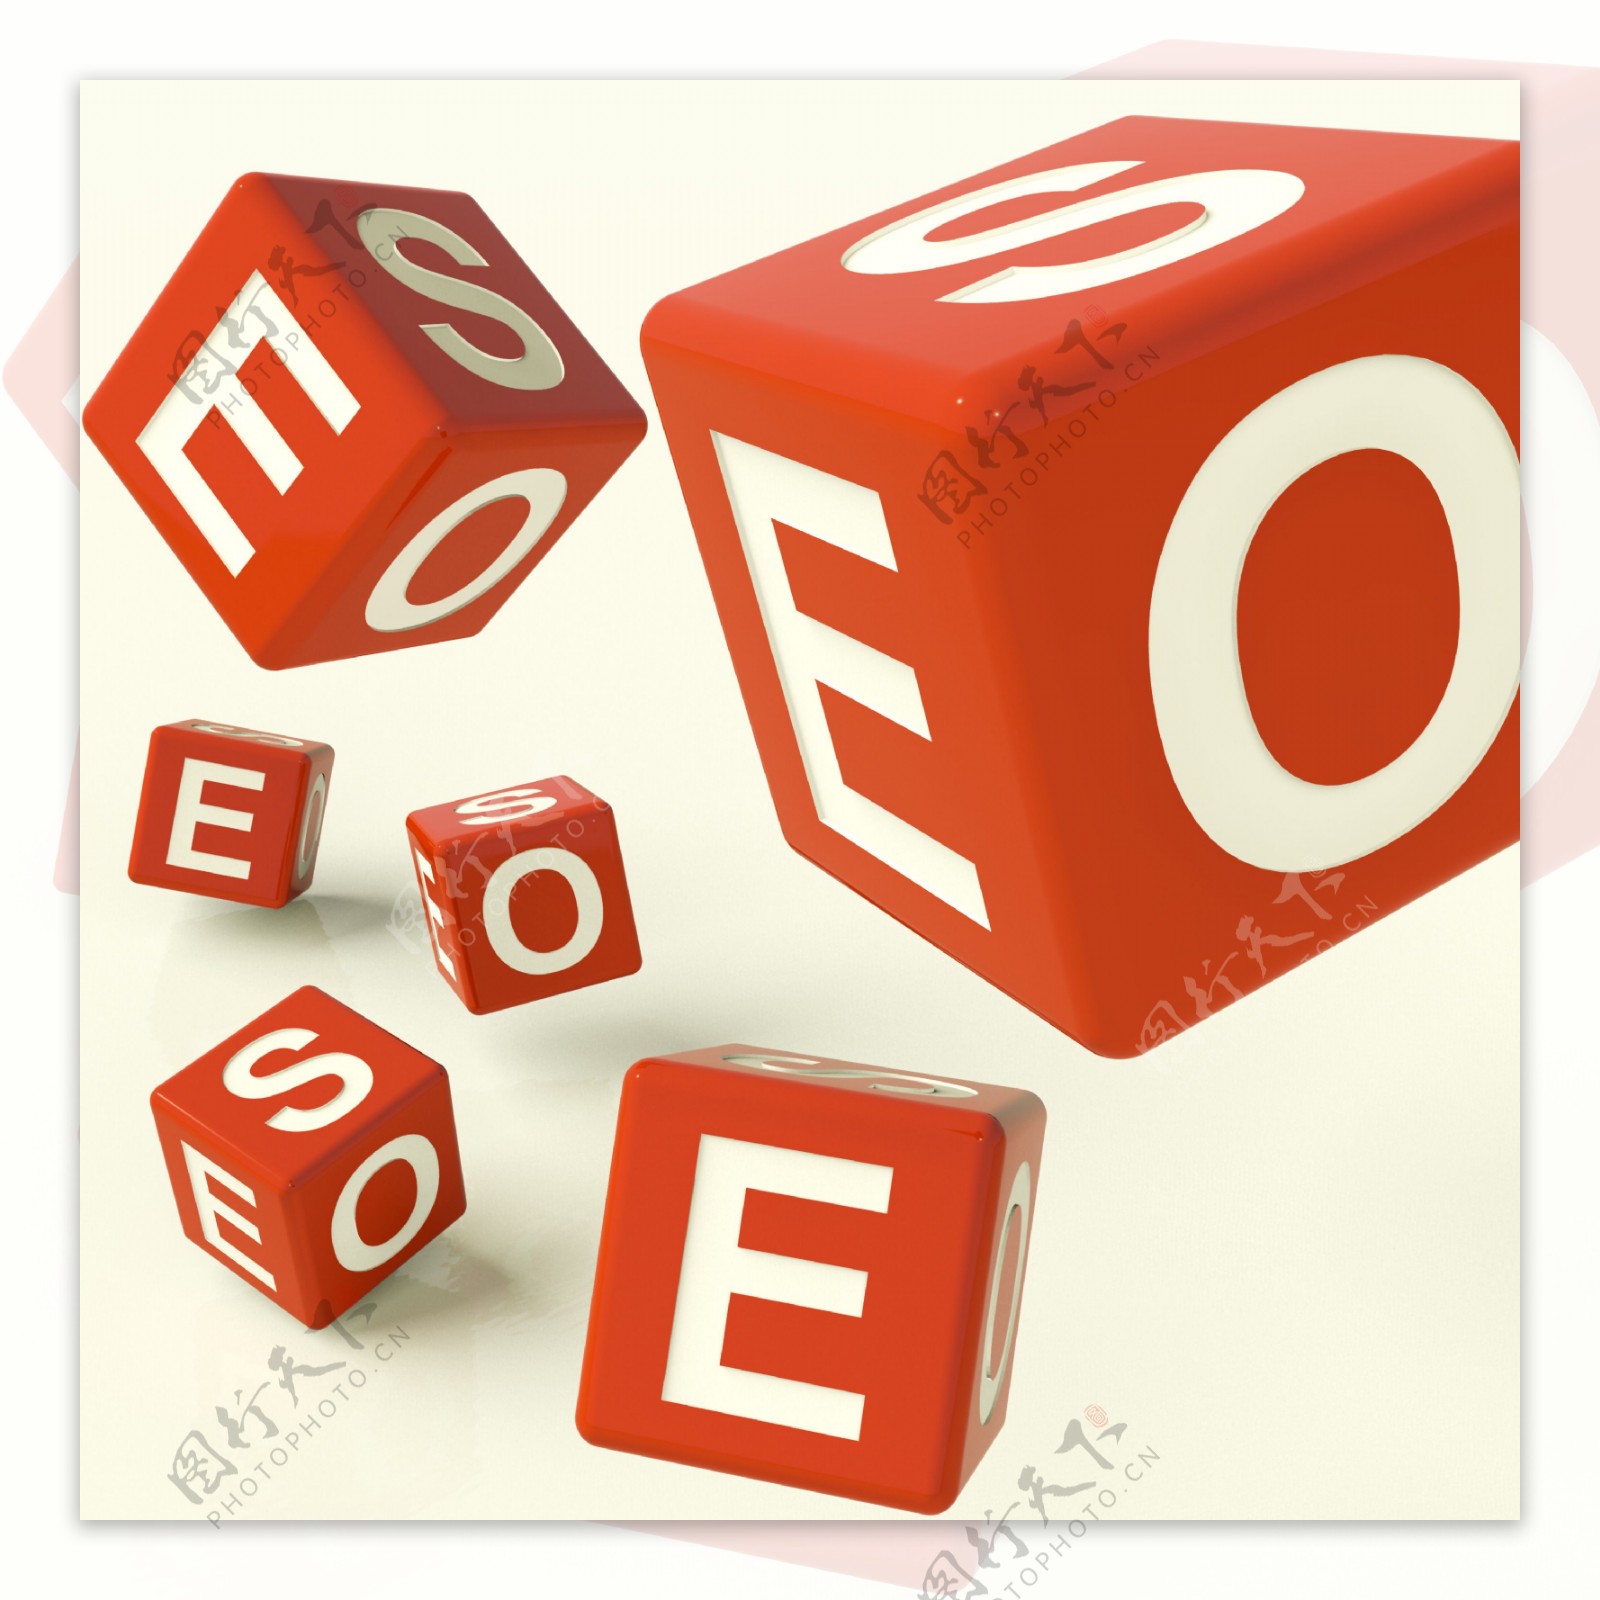 SEO骰子代表网络优化与发展